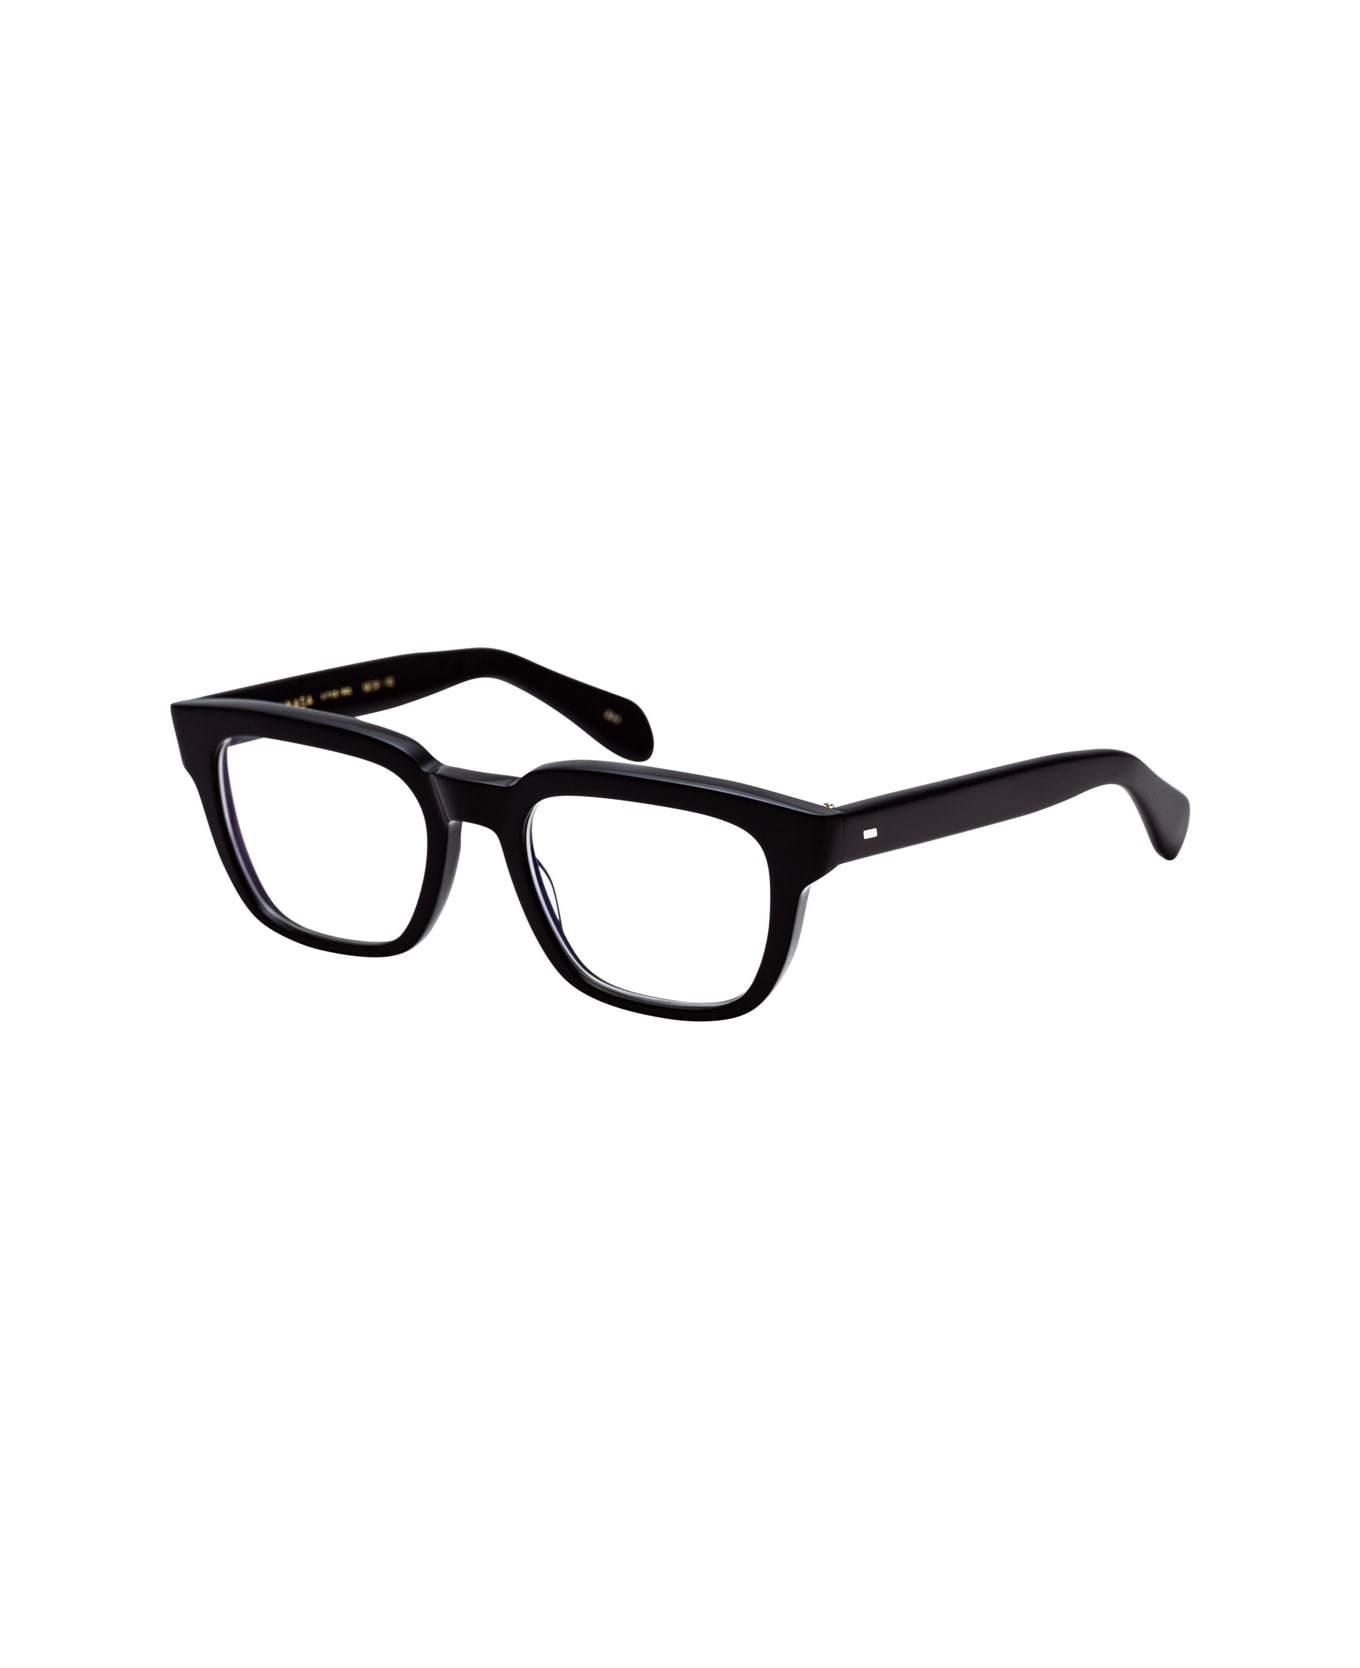 Masunaga Kk 100 19 Glasses - Nero アイウェア